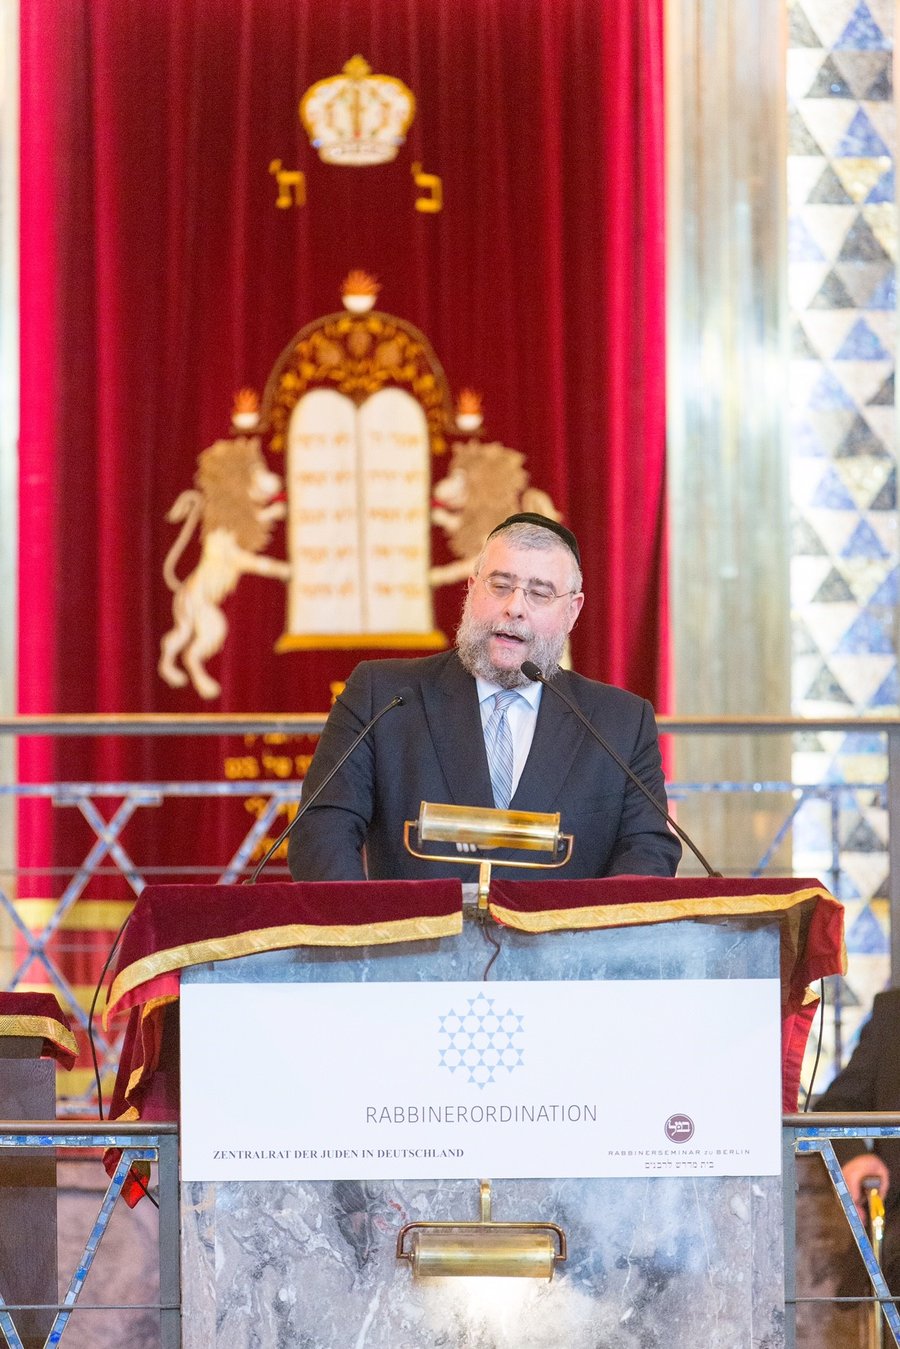 הרב גולדשמידט בטקס הסמכת רבנים בבית הכנסת הגדול בפרנקפורט צילום באדיבות צנטרלרט יהודי גרמניה - יוכן גינטר